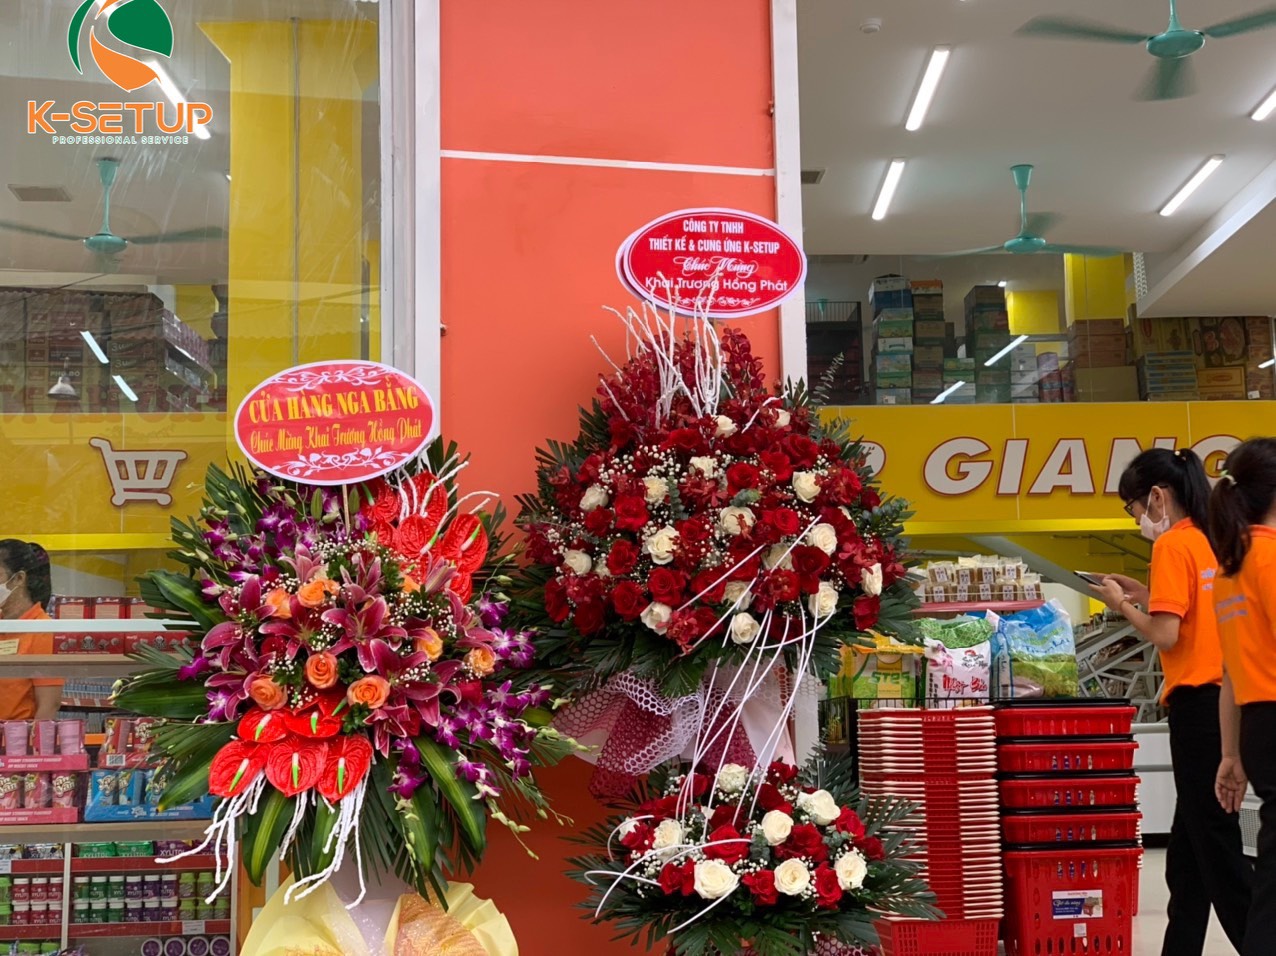 siêu thị Hợp Giang - thành phố Cao Bằng đã chính thức khai trương.